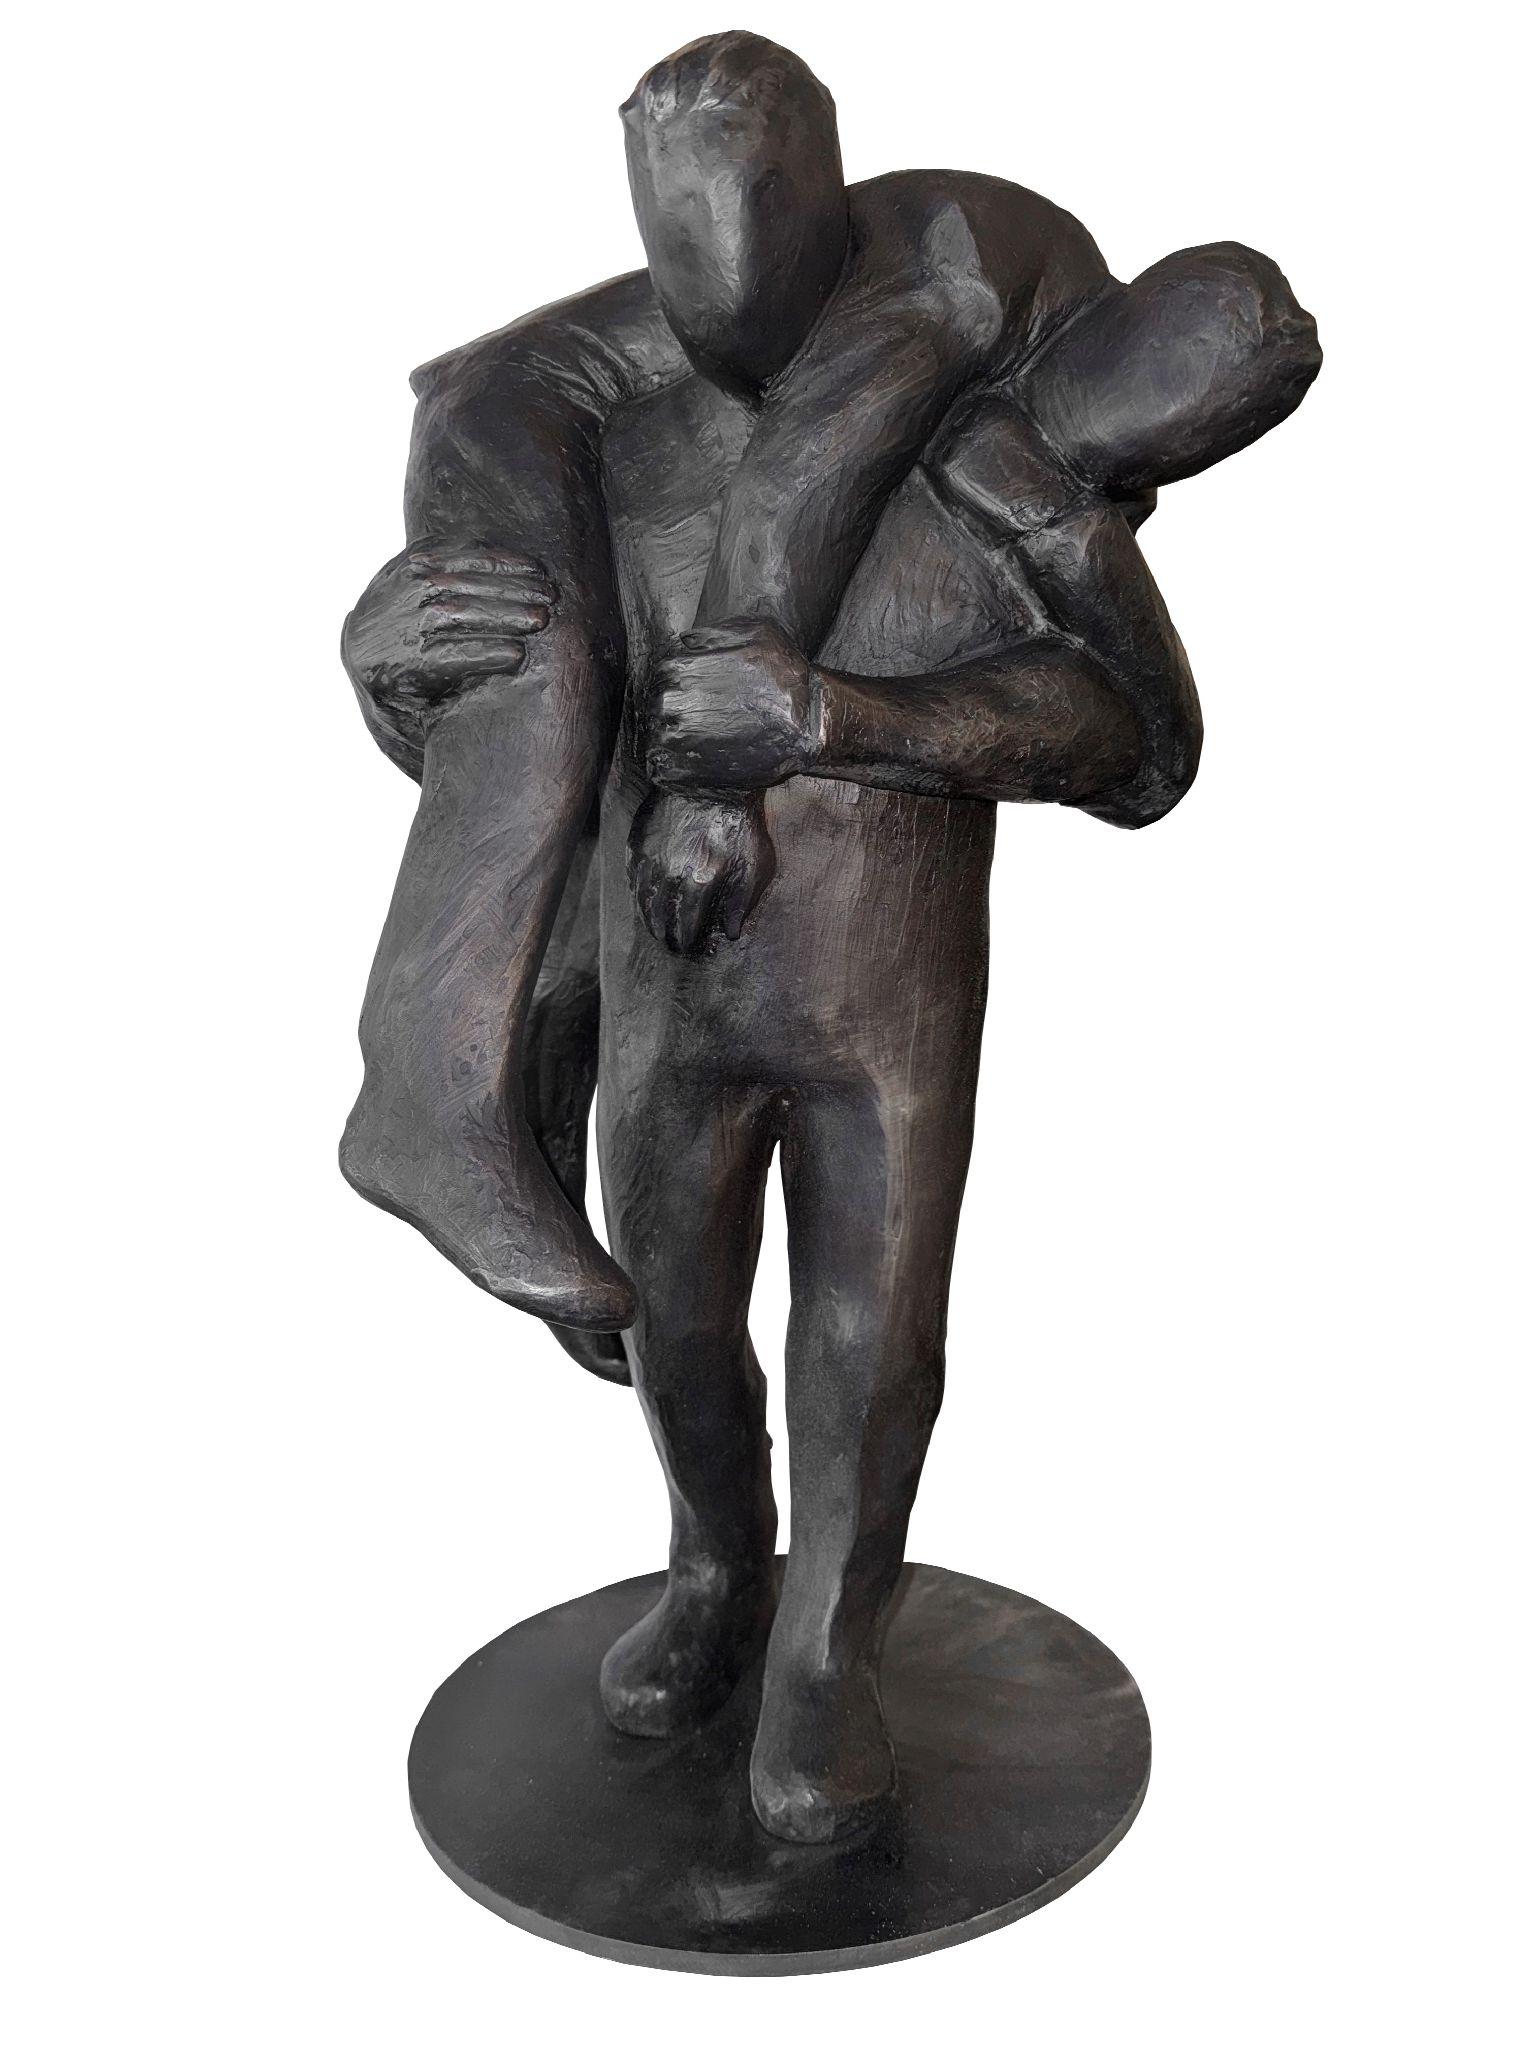 Jim Rennert Figurative Sculpture - Mentor